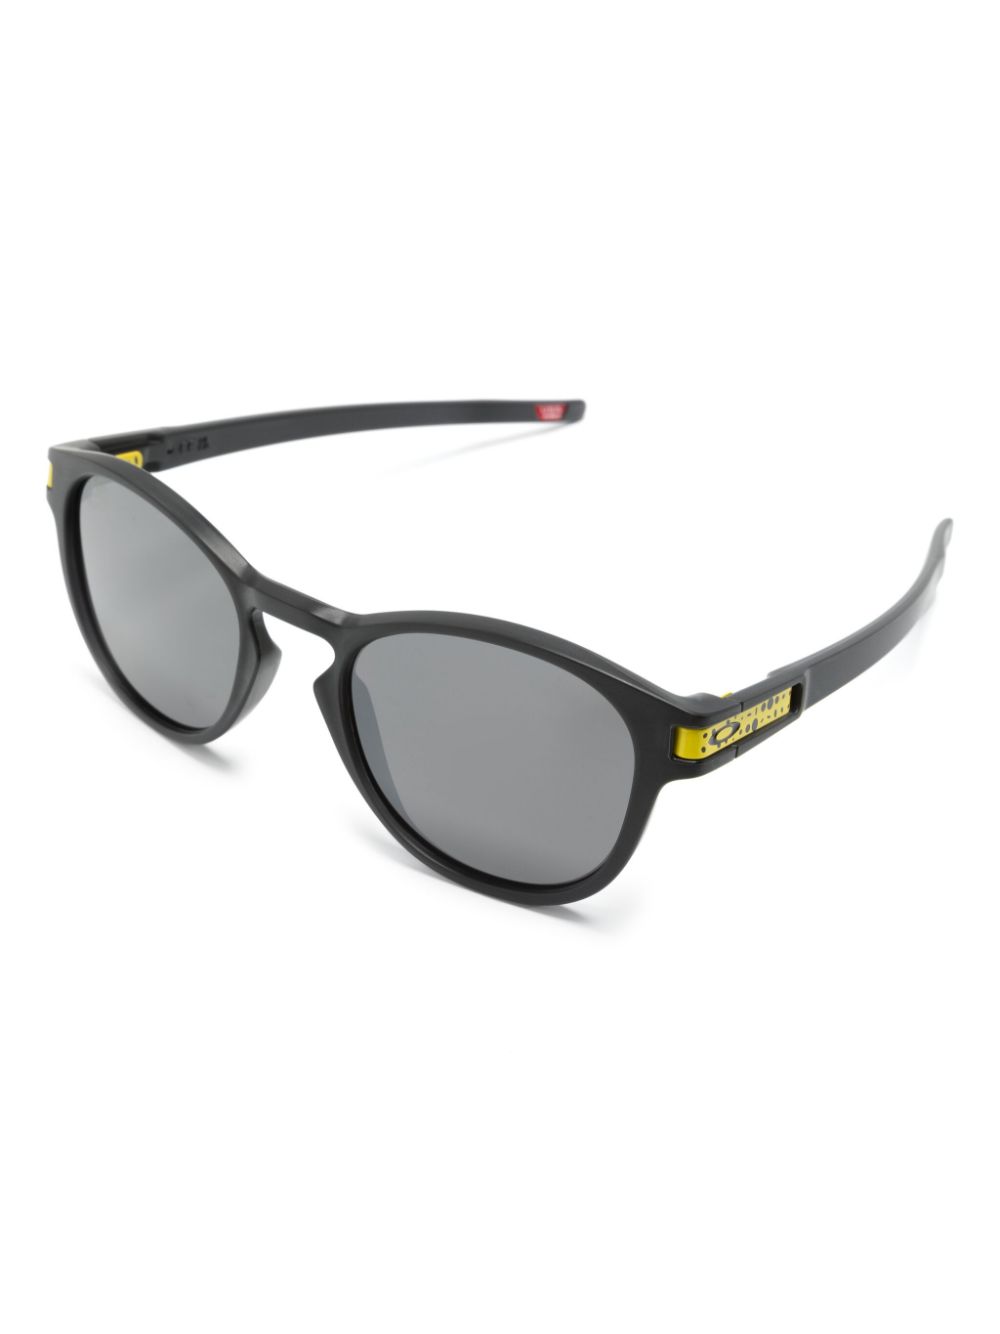 Latch oval-frame sunglasses<BR/><BR/>